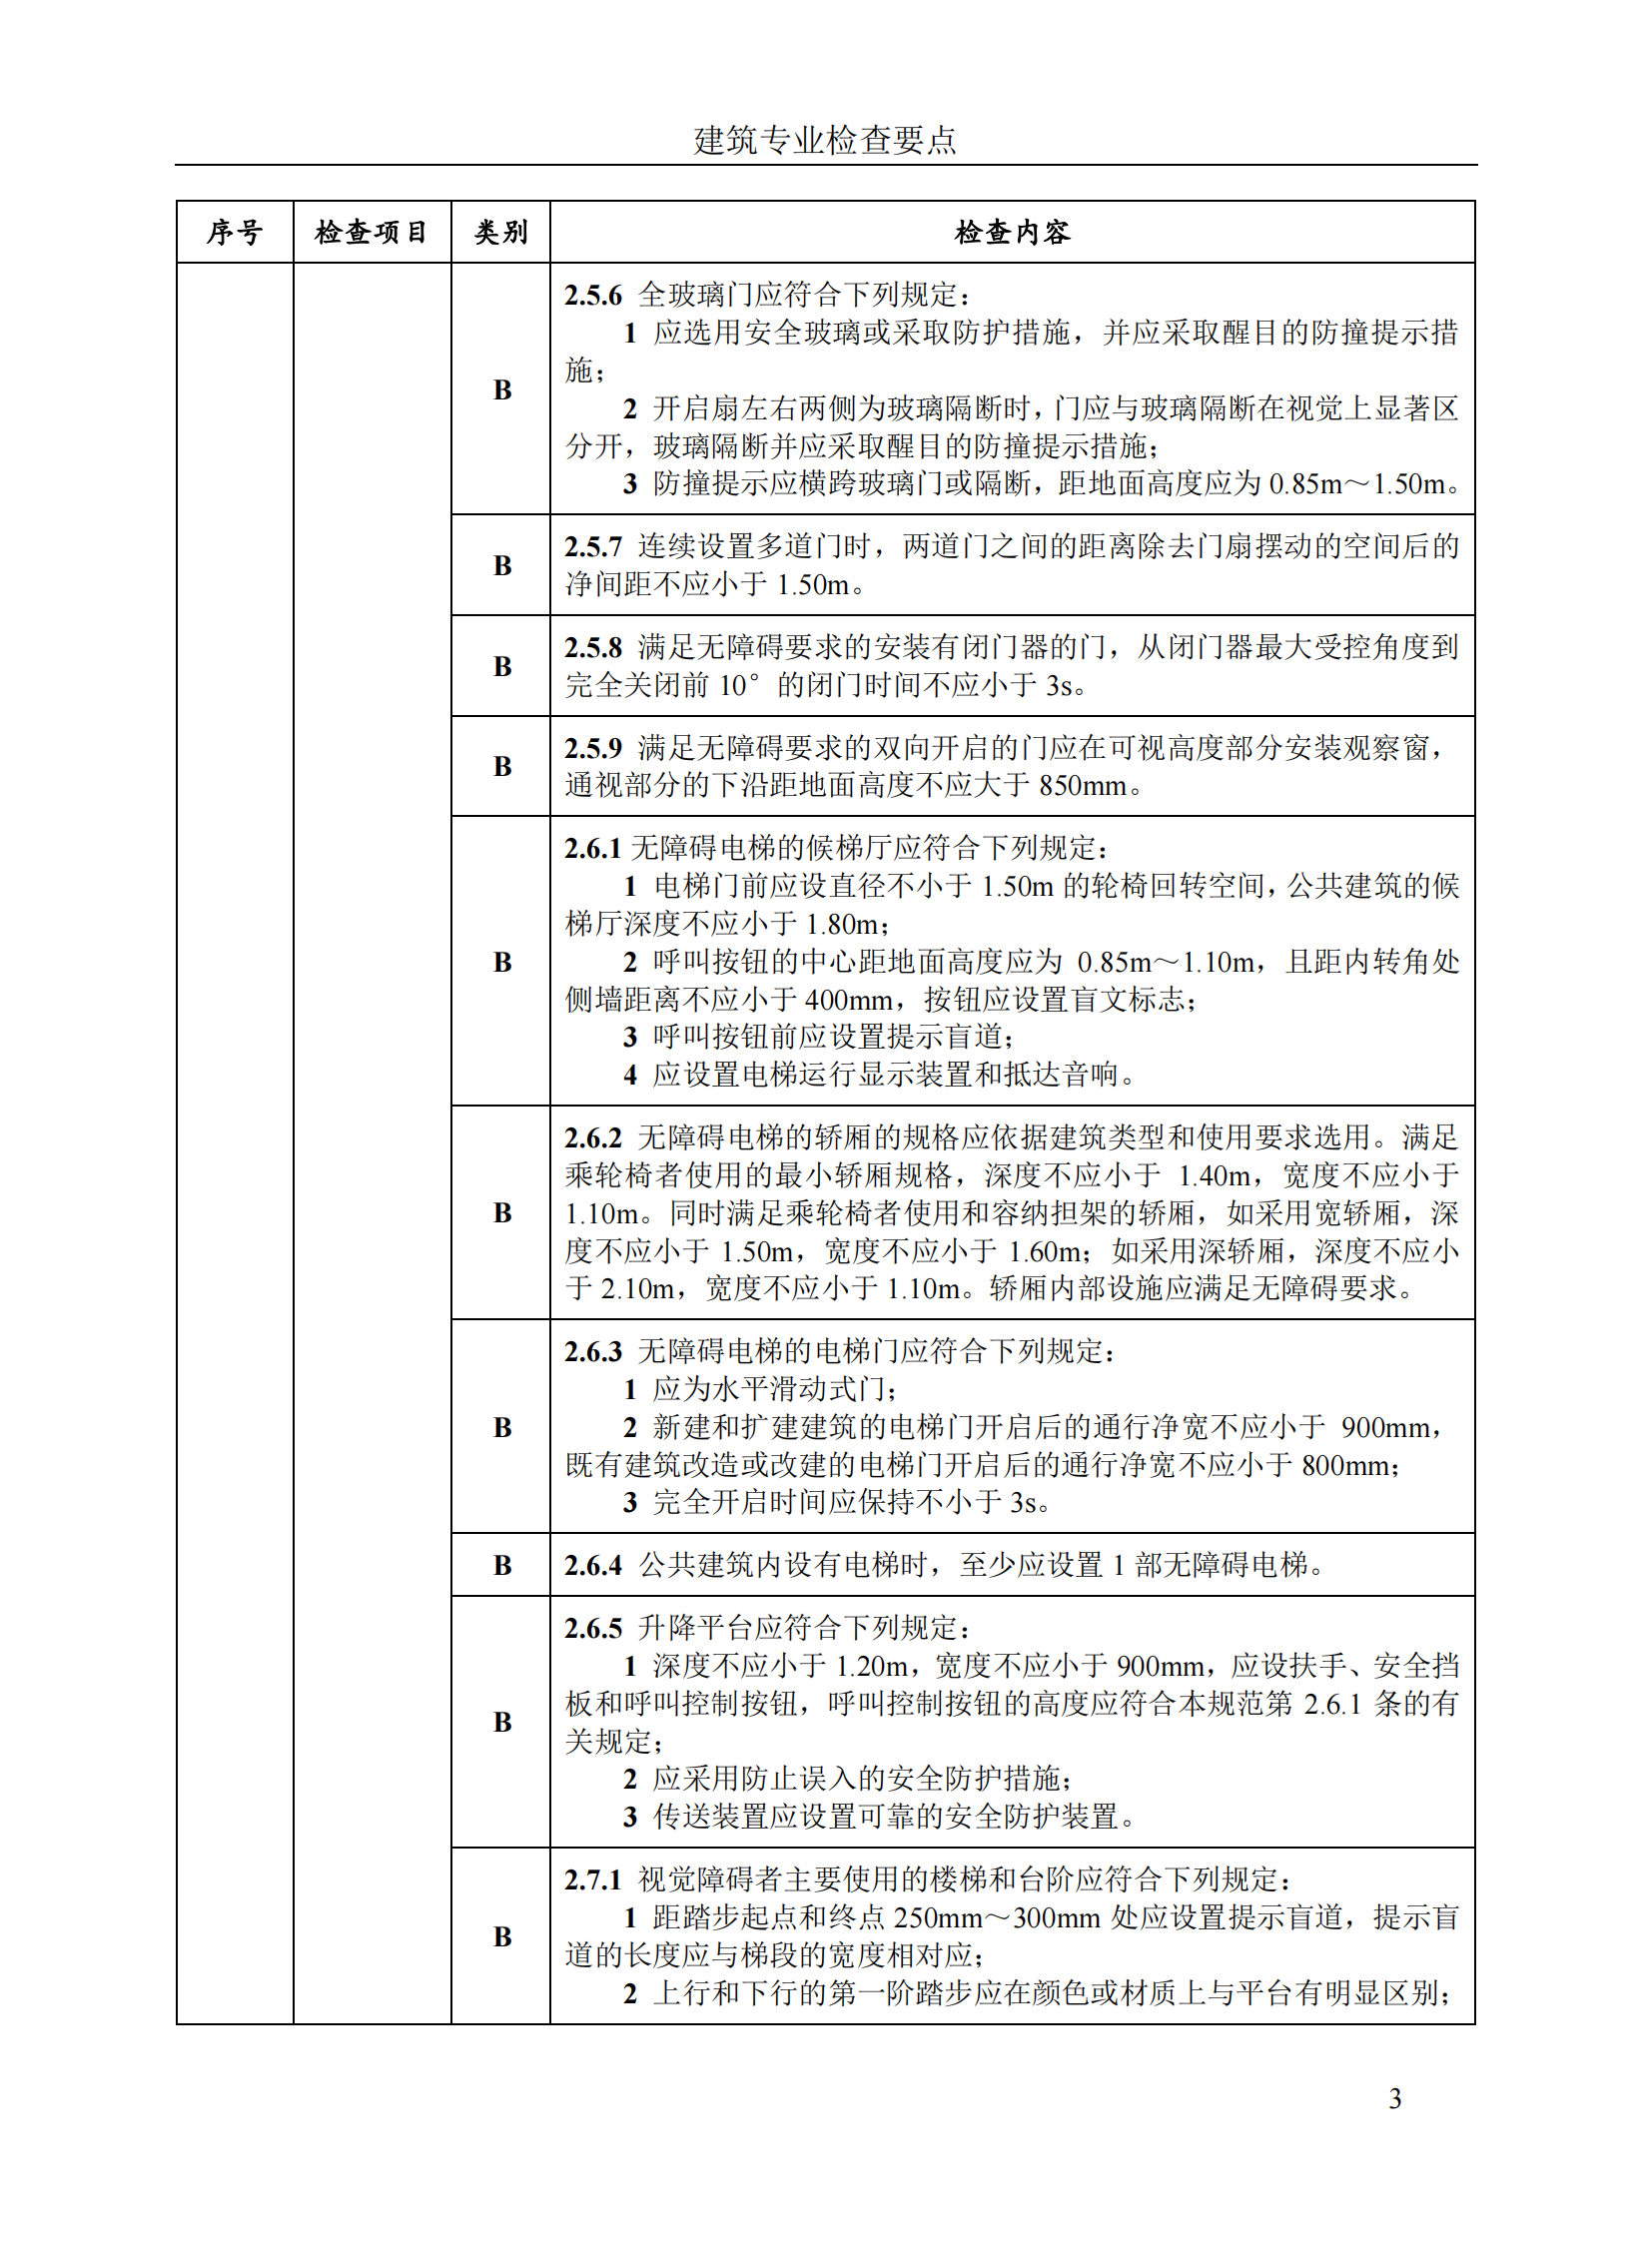 北京市房屋建筑工程施工图事后检查要点（上下册）插图(9)